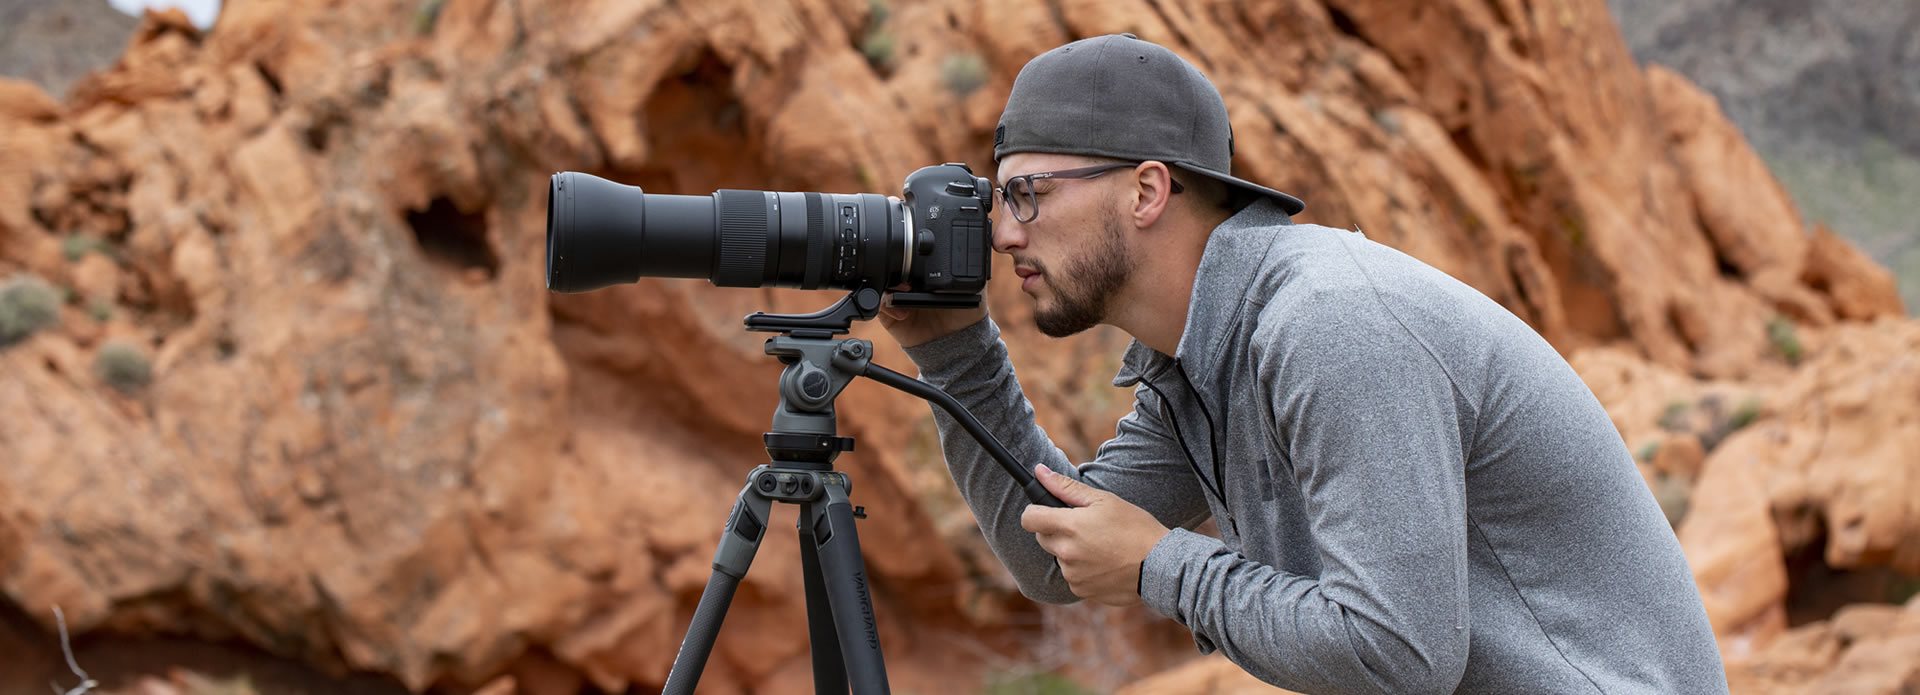 Fotografo sportivo che scatta con la sua fotocamera e l'obiettivo su un treppiede video.